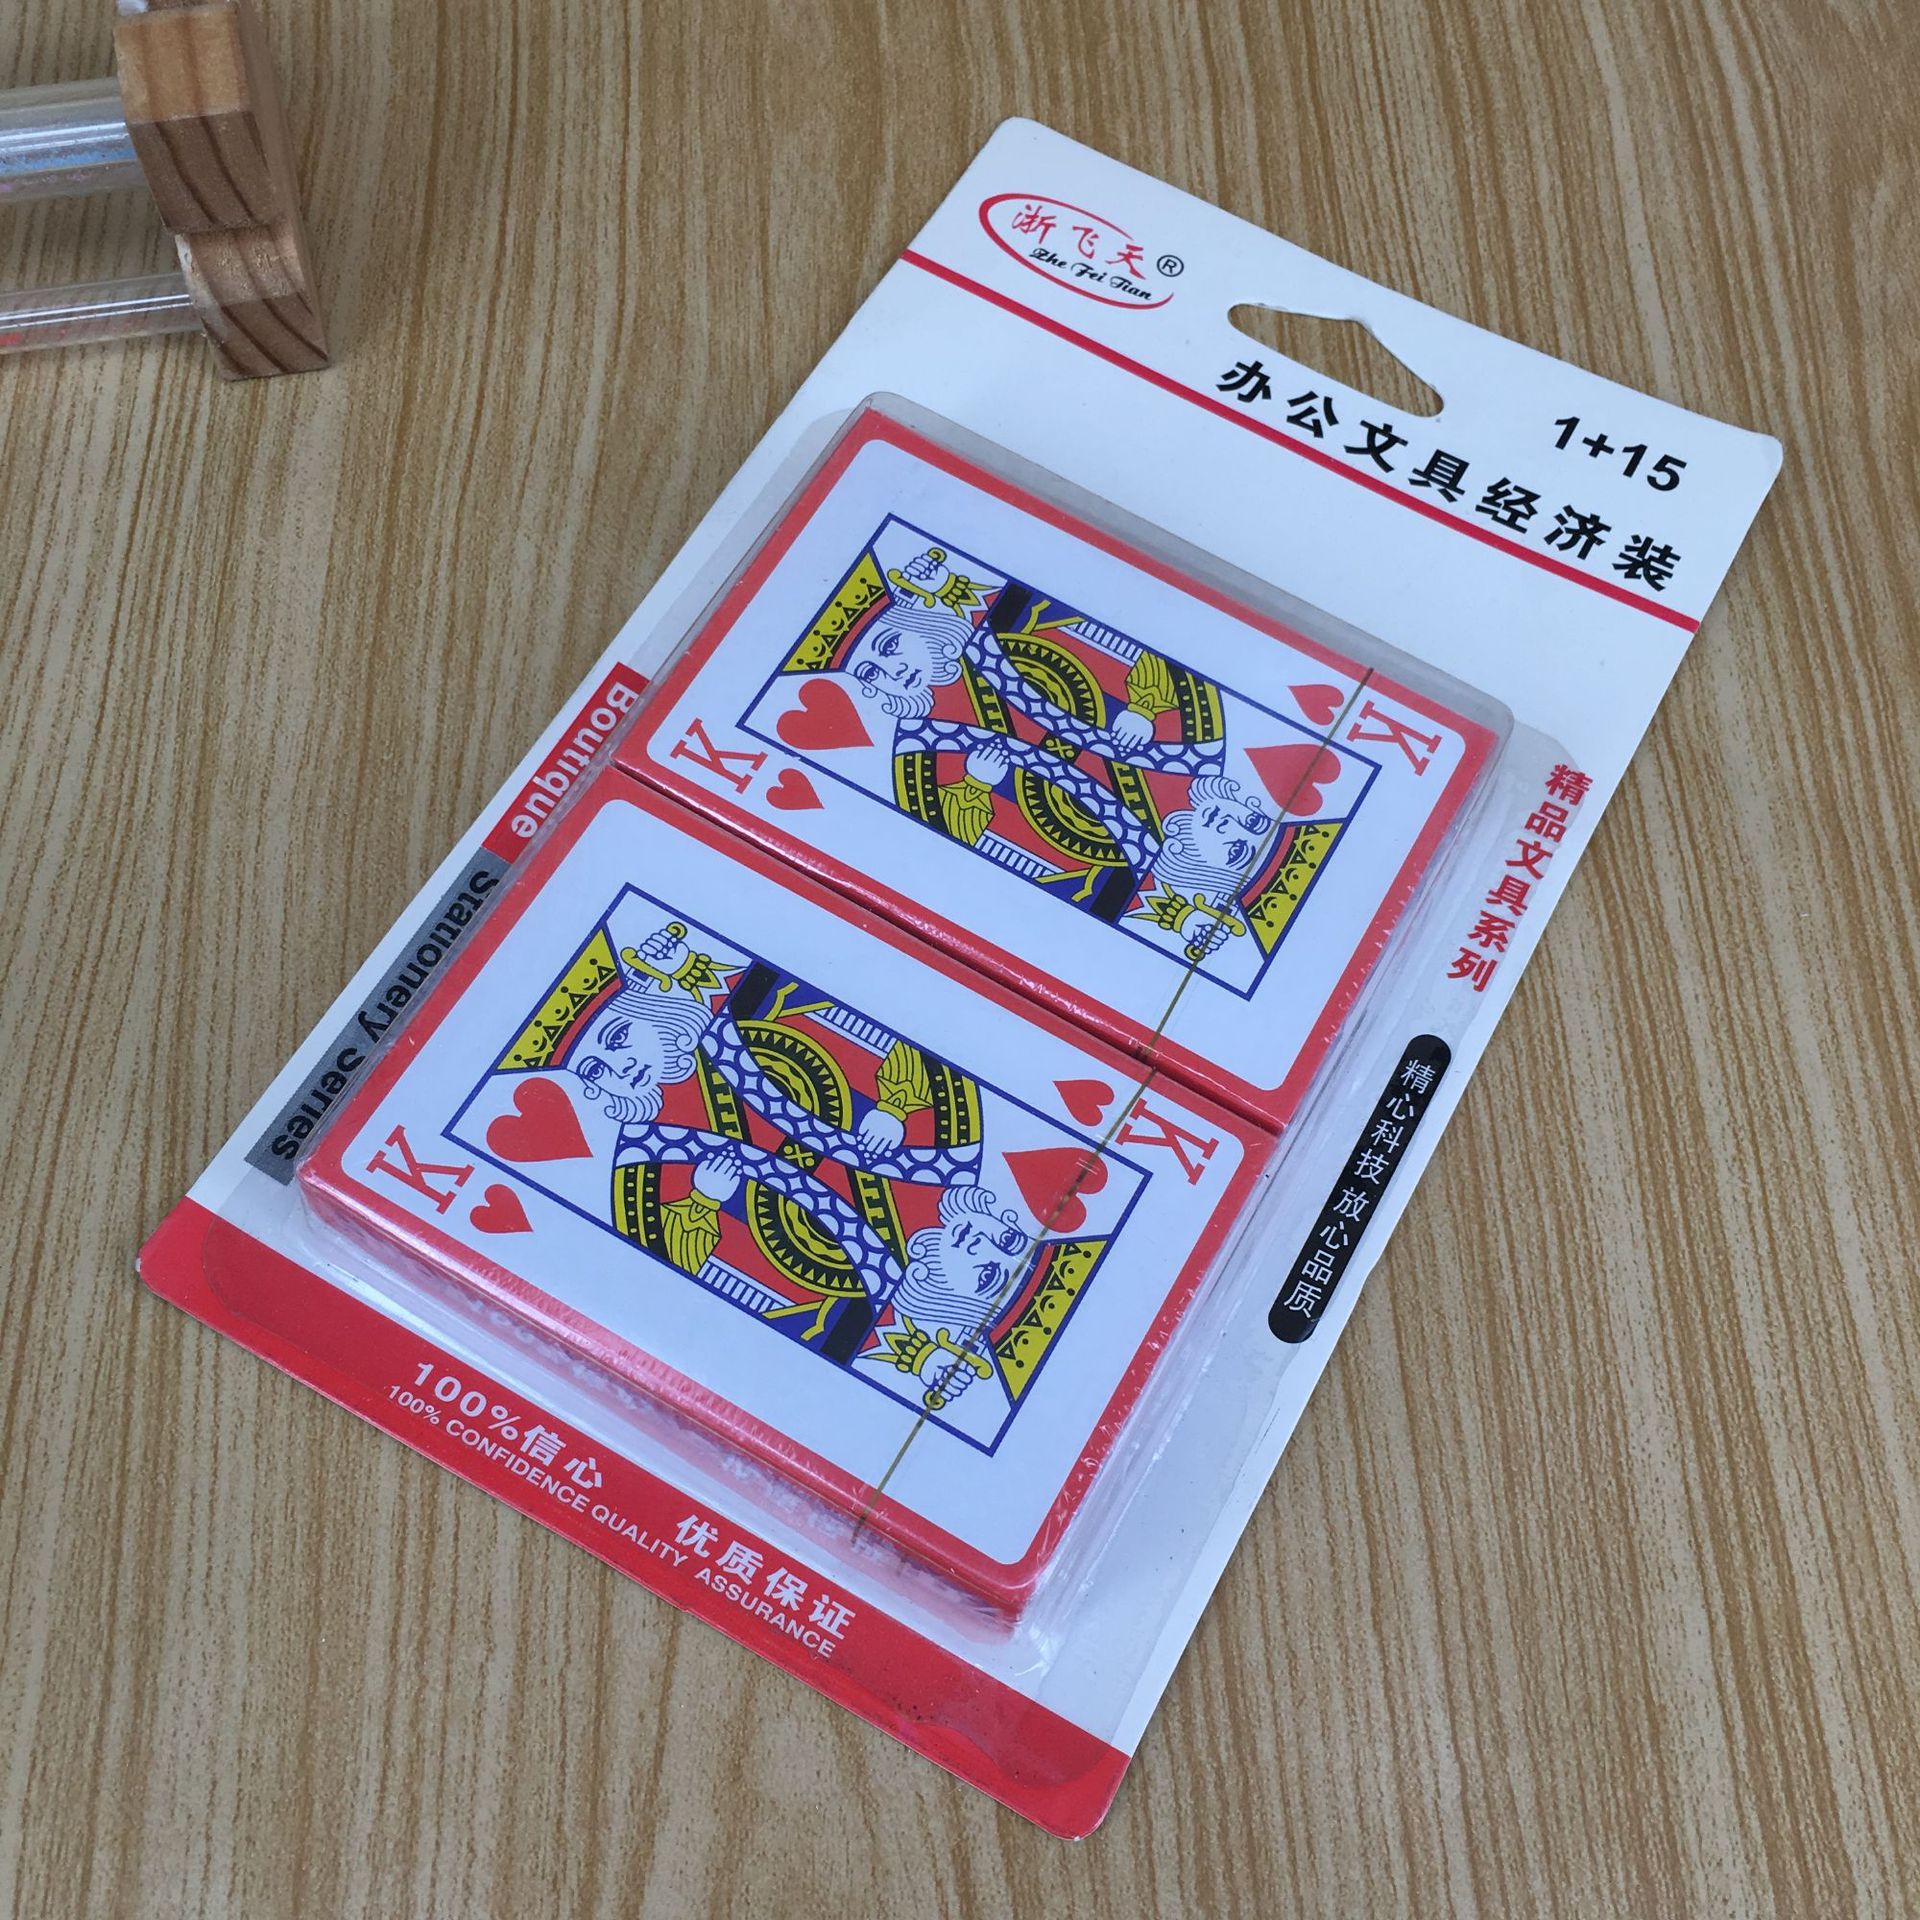 厂家直销两付扑克卡装K牌纸牌套装娱乐游戏用扑克牌套装二元店货详情3